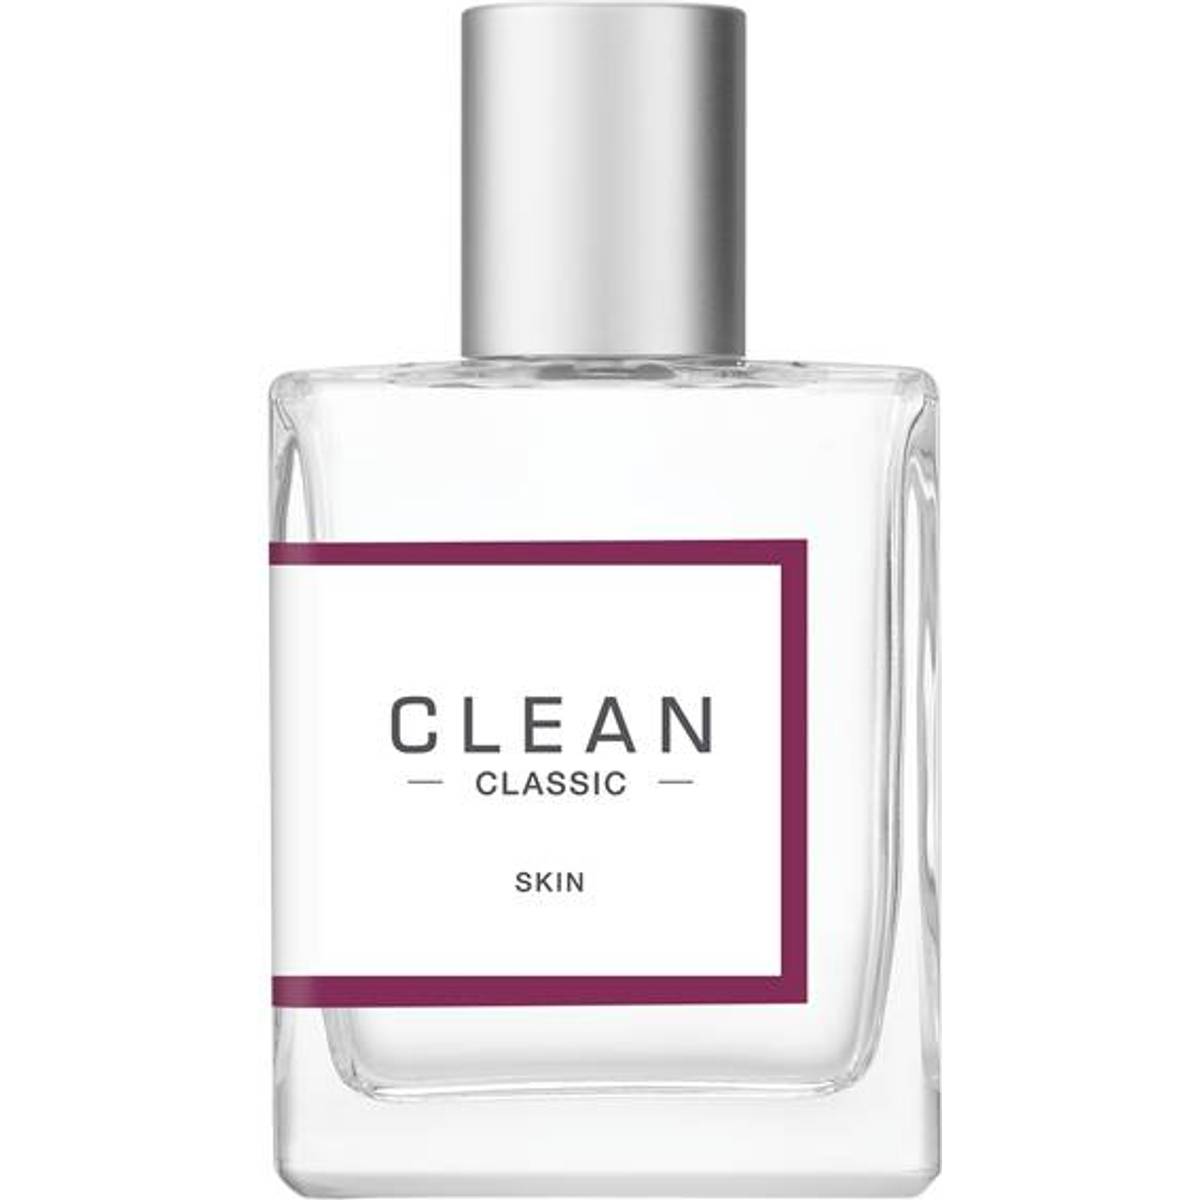 Clean skin parfym • Hitta det lägsta priset hos PriceRunner nu »